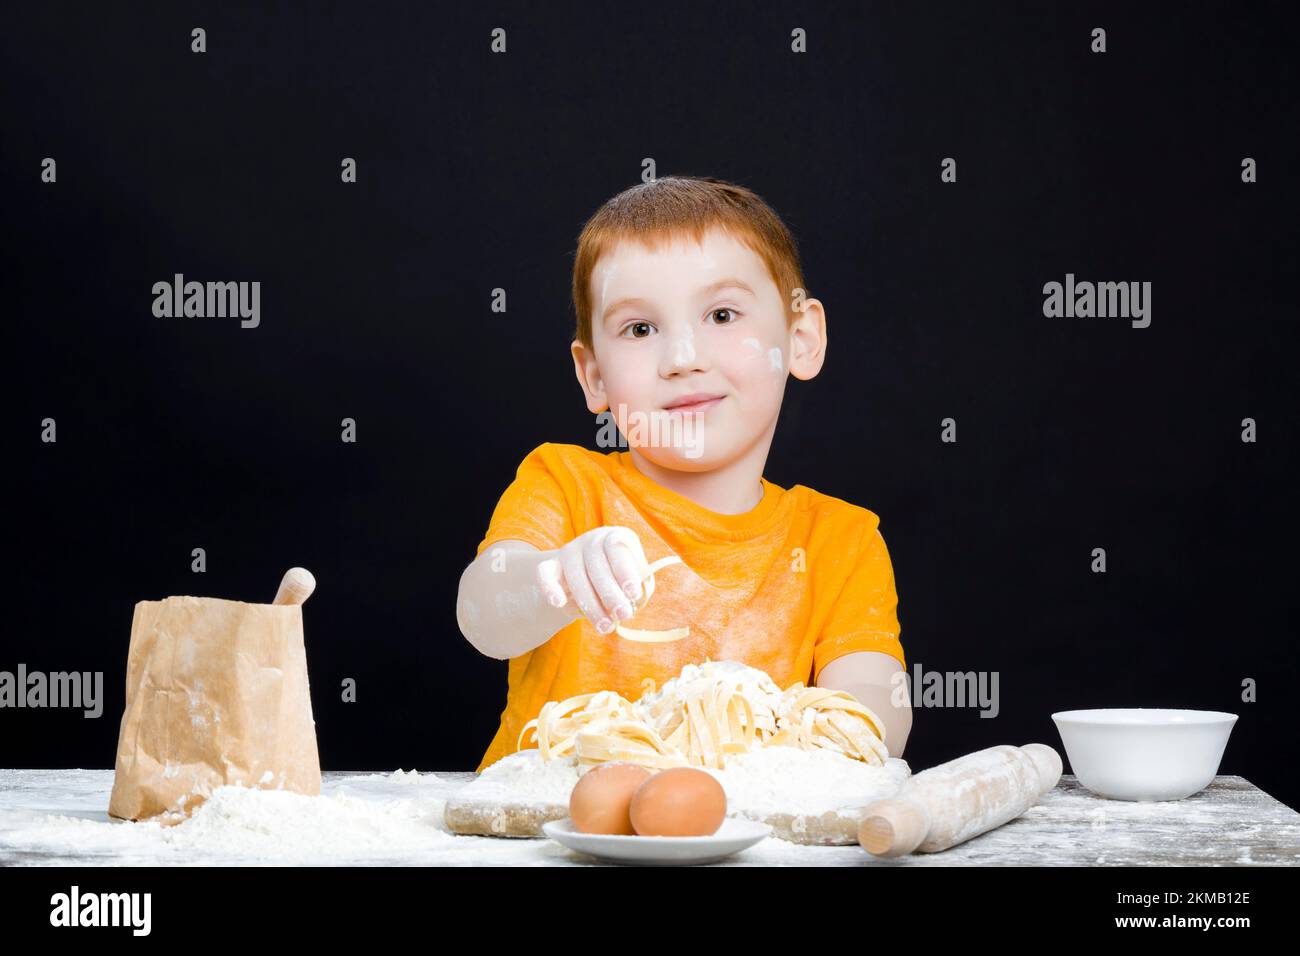 bébé garçon dans la cuisine tout en aidant à préparer la nourriture, garçon avec des cheveux rouges et de belles caractéristiques du visage, bébé jouant avec la farine dans la cuisine Banque D'Images